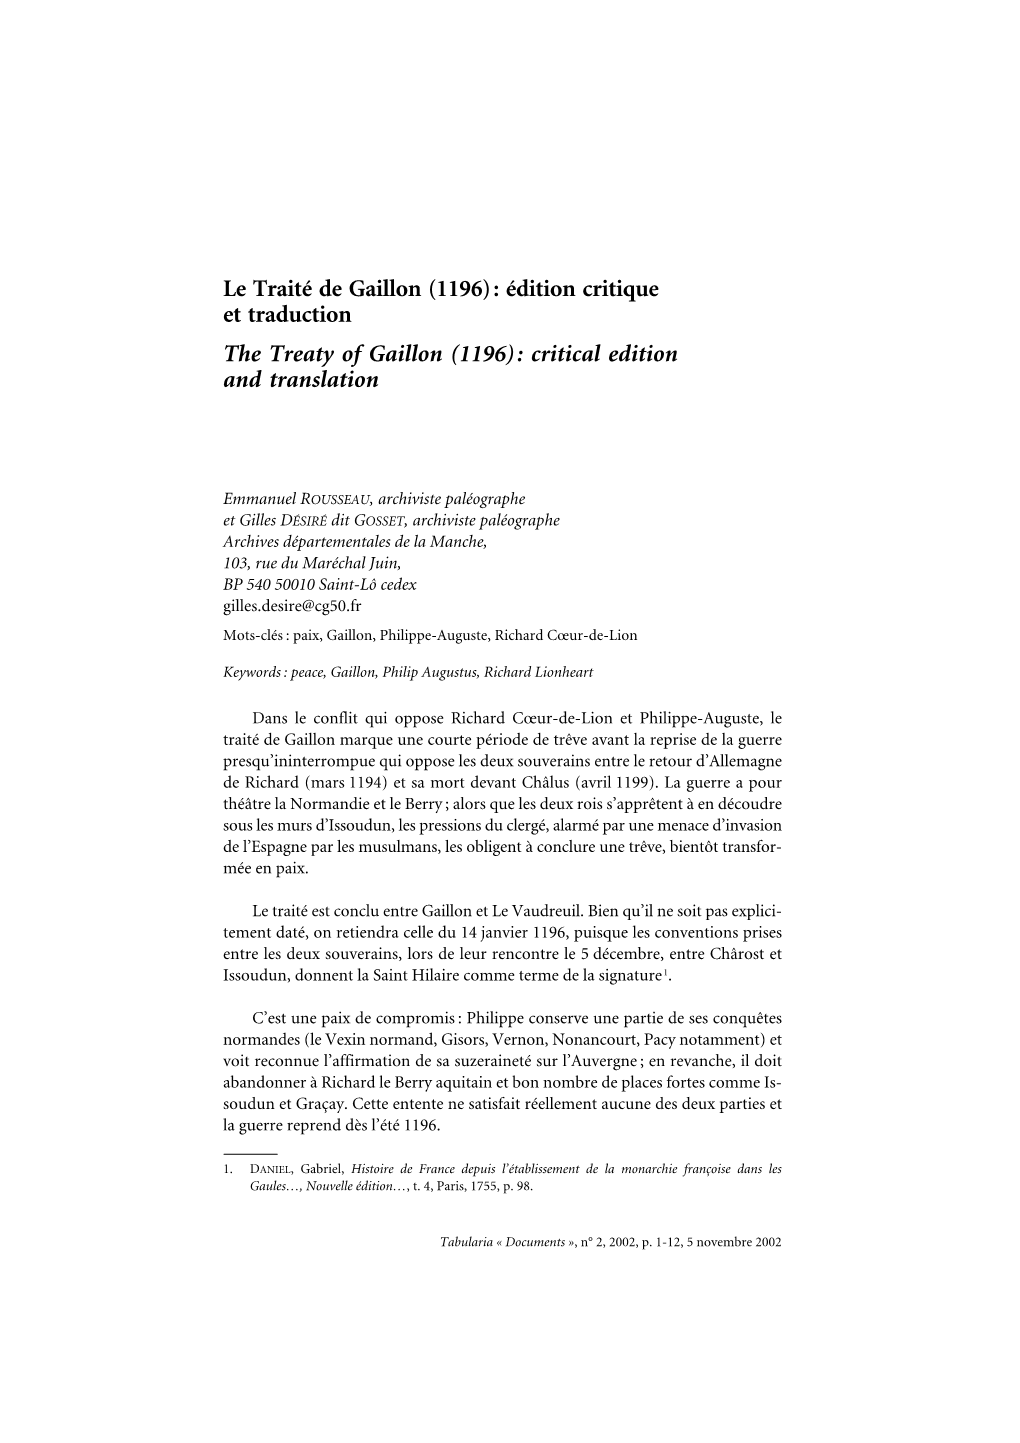 Le Traité De Gaillon (1196): Édition Critique Et Traduction the Treaty of Gaillon (1196): Critical Edition and Translation